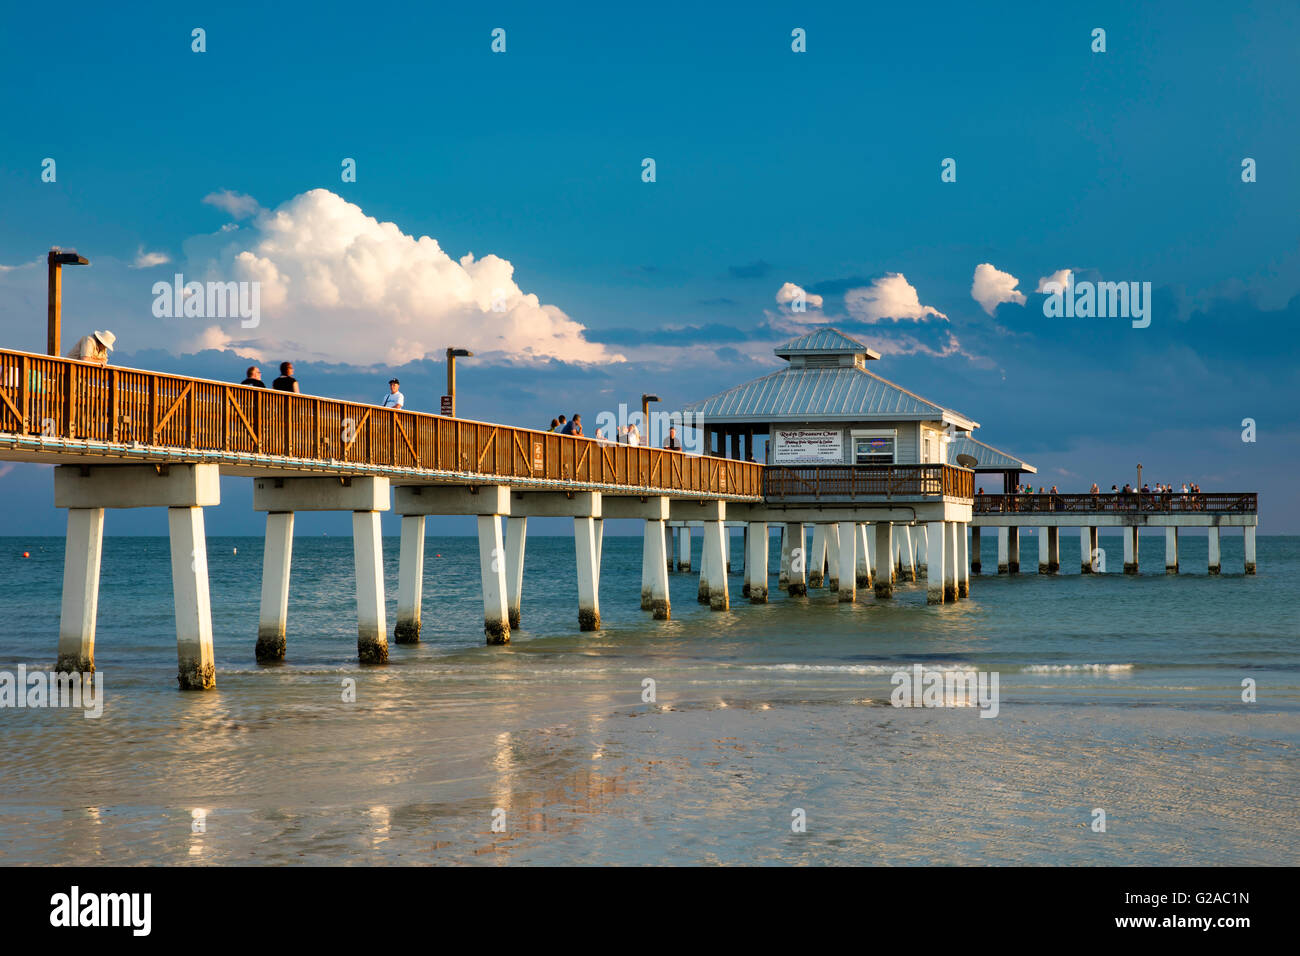 Soirée de printemps au Ft. Myers Beach Pier, Ft. Myers, Floride, USA Banque D'Images